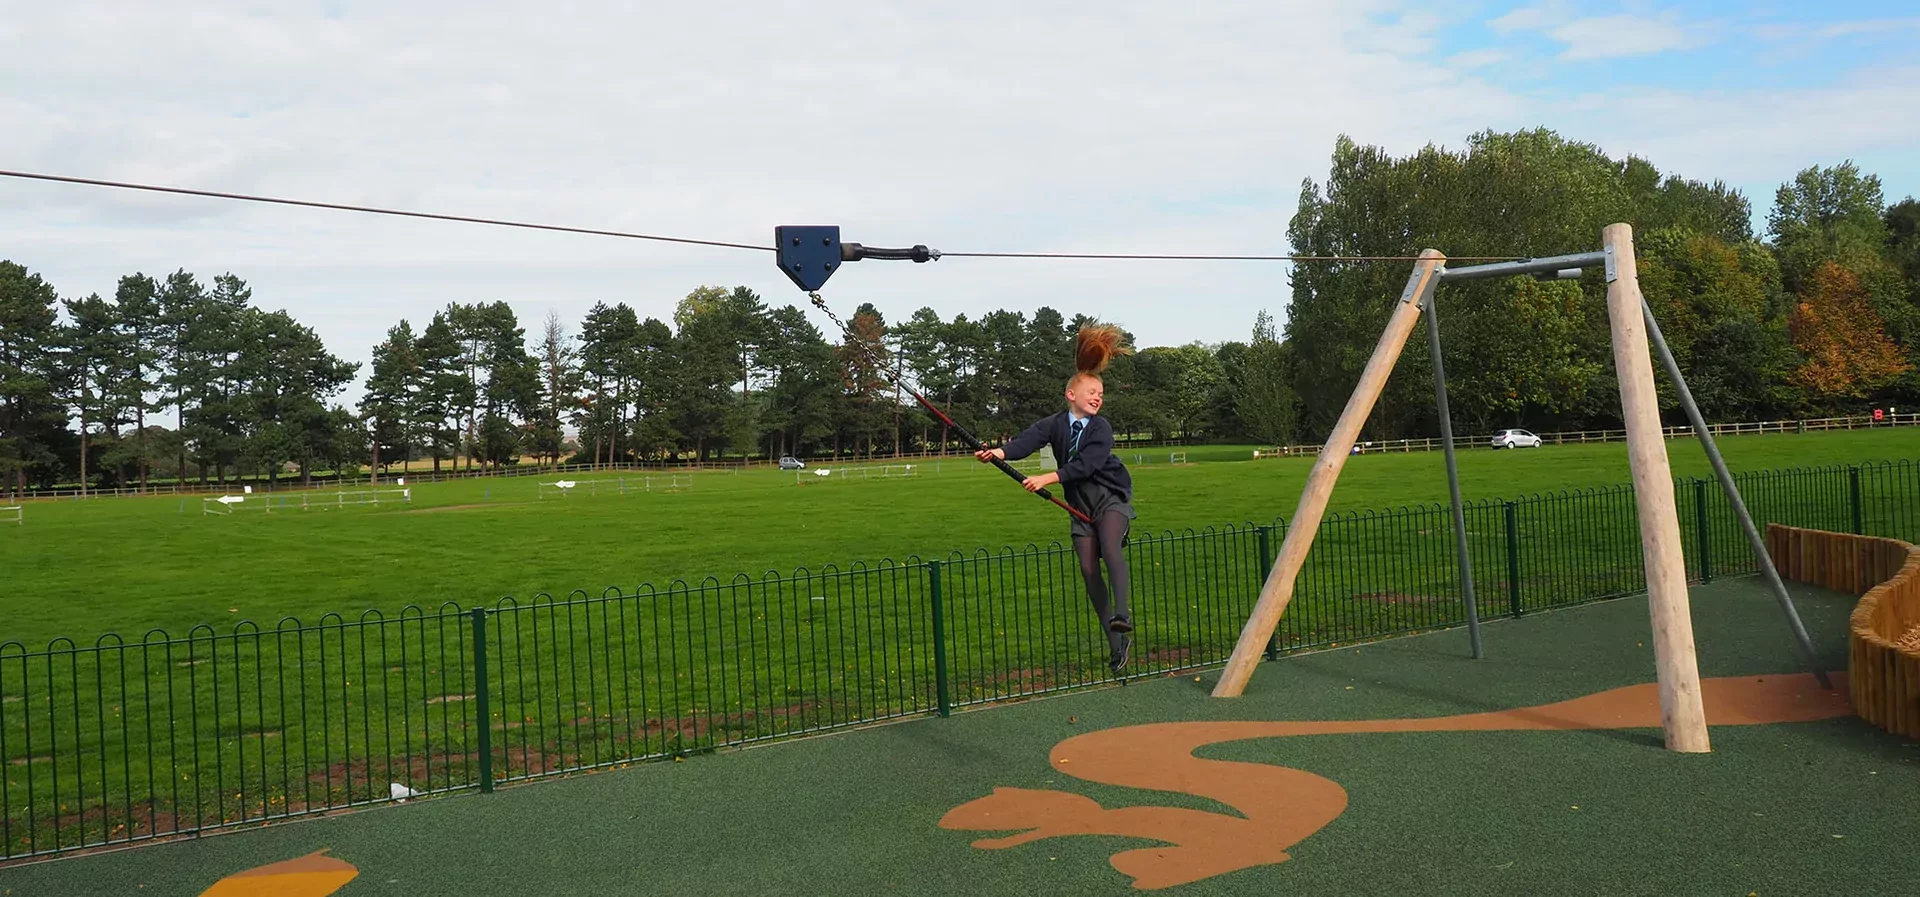 Mädchen hat Spaß auf einer Spielplatz Seilbahn in einem öffentlichen Park in England